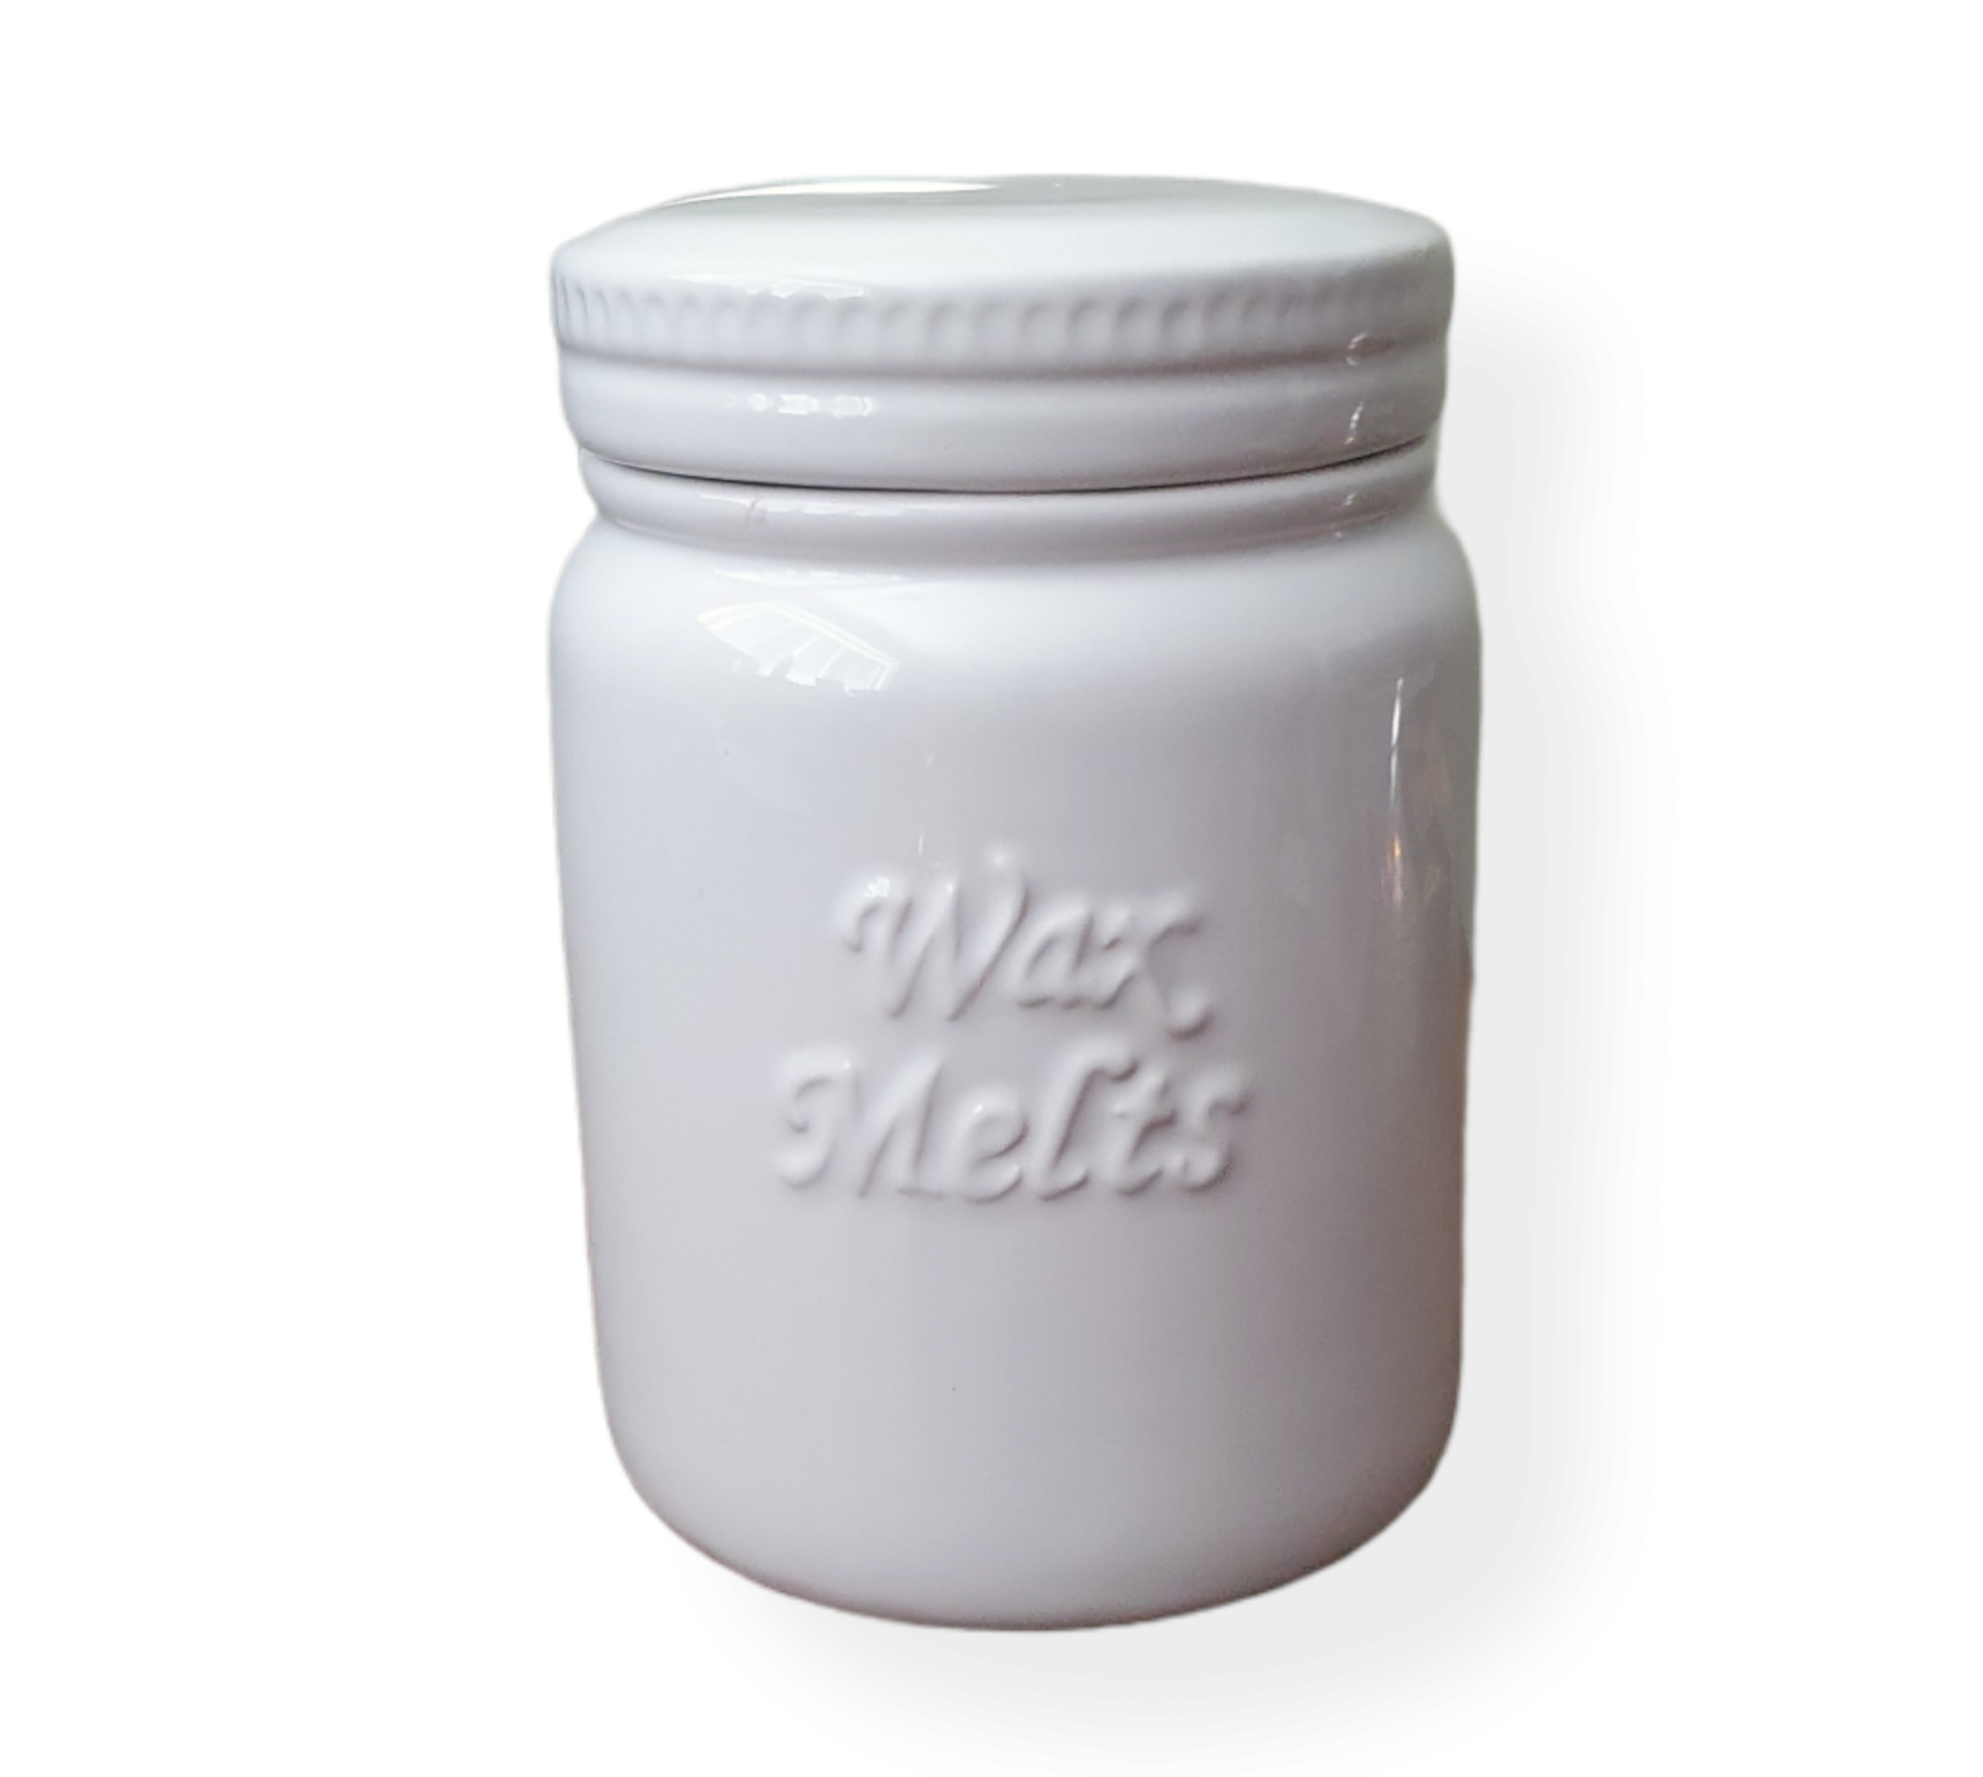 Large shiny white ceramic mason jar lid on, raised wax melts wording on it.